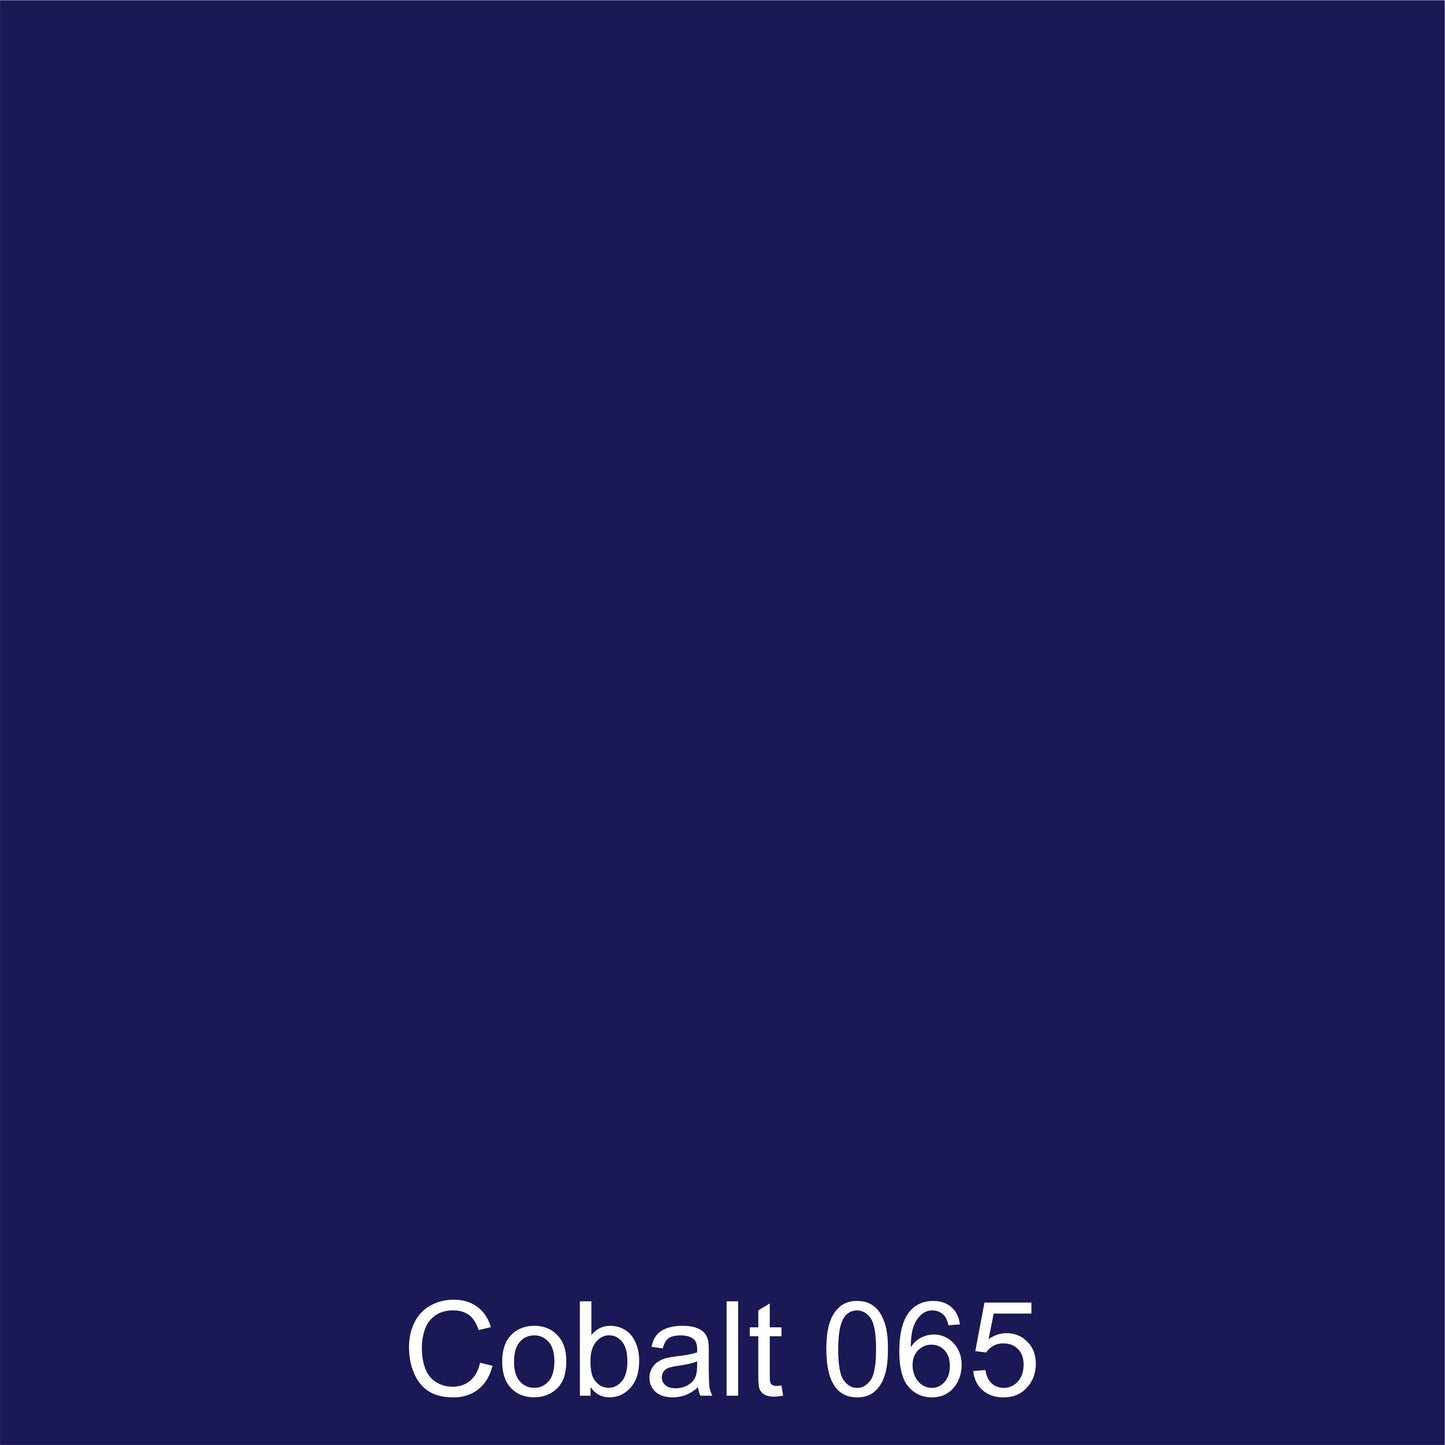 Oracal 651 Gloss :- Cobalt - 065